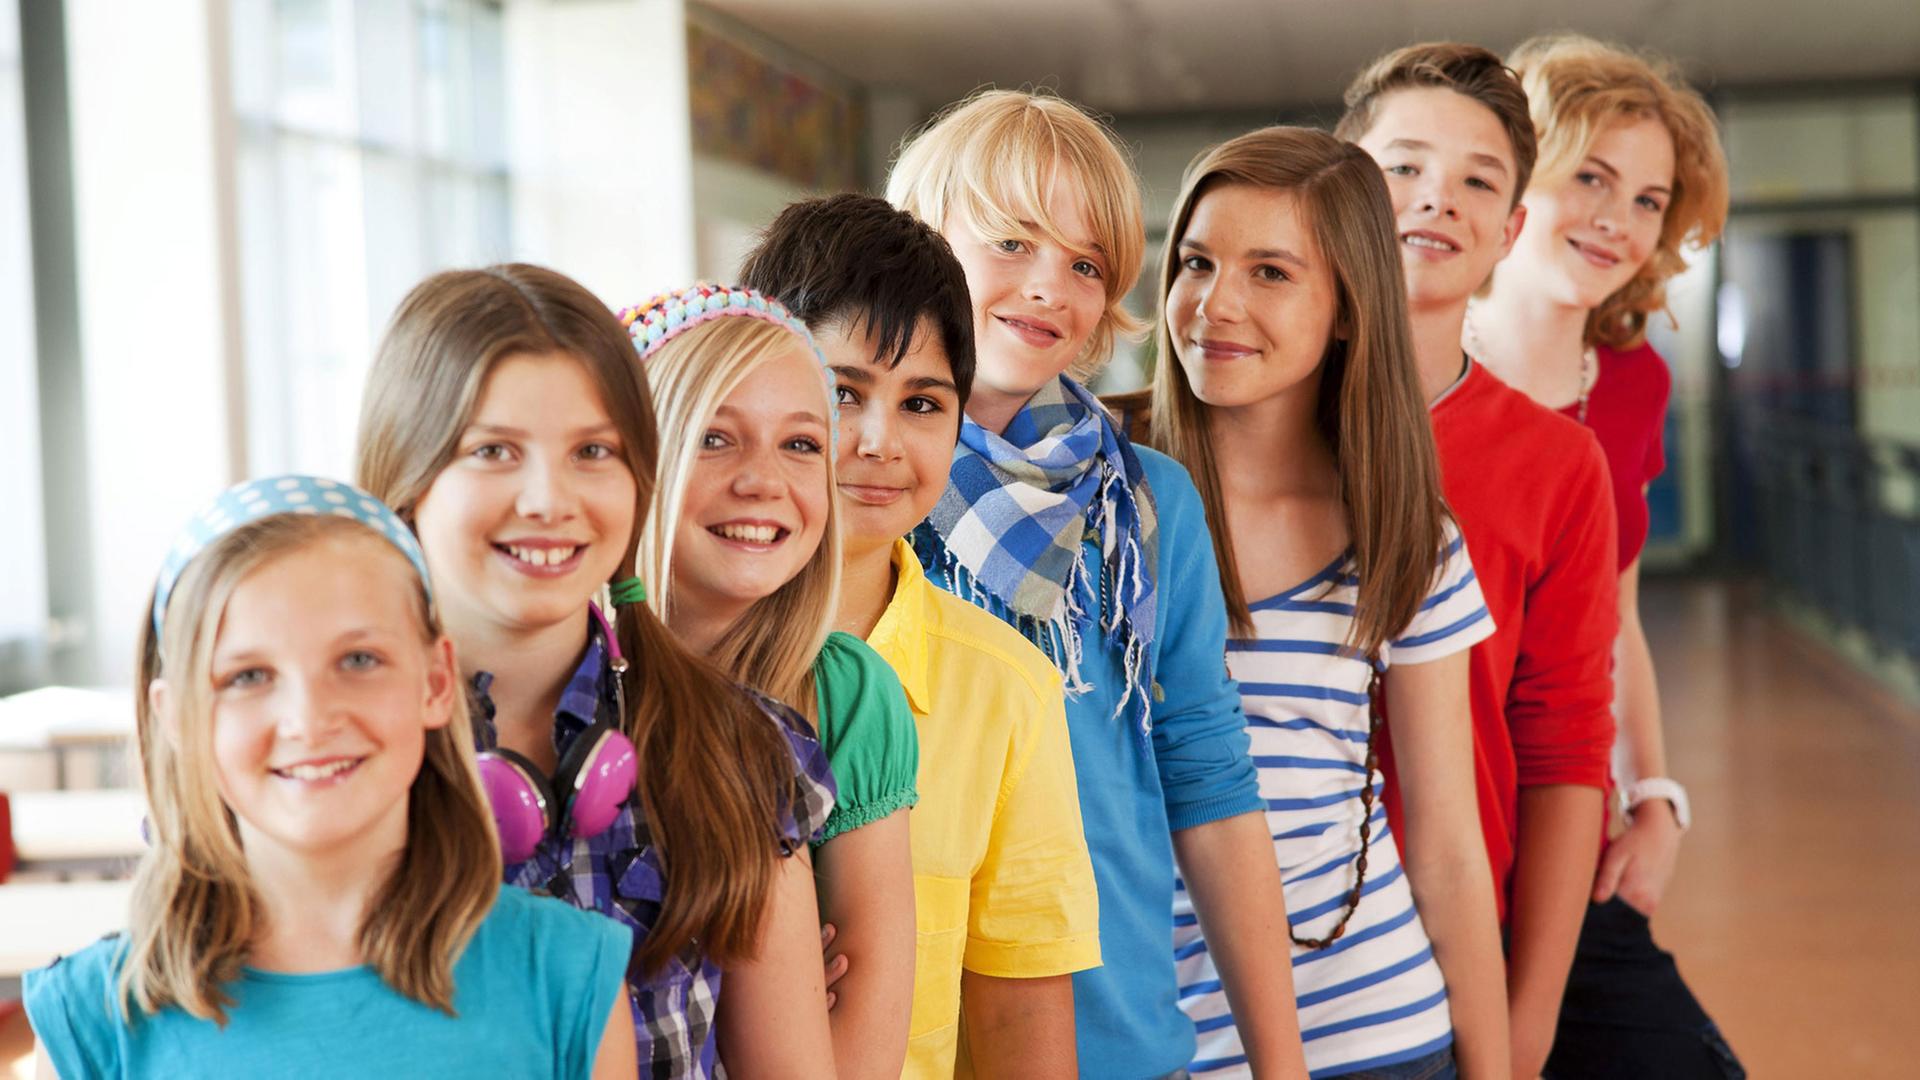 Das Bild zeigt eine Gruppe von Schülern in einem Schulgebäude.